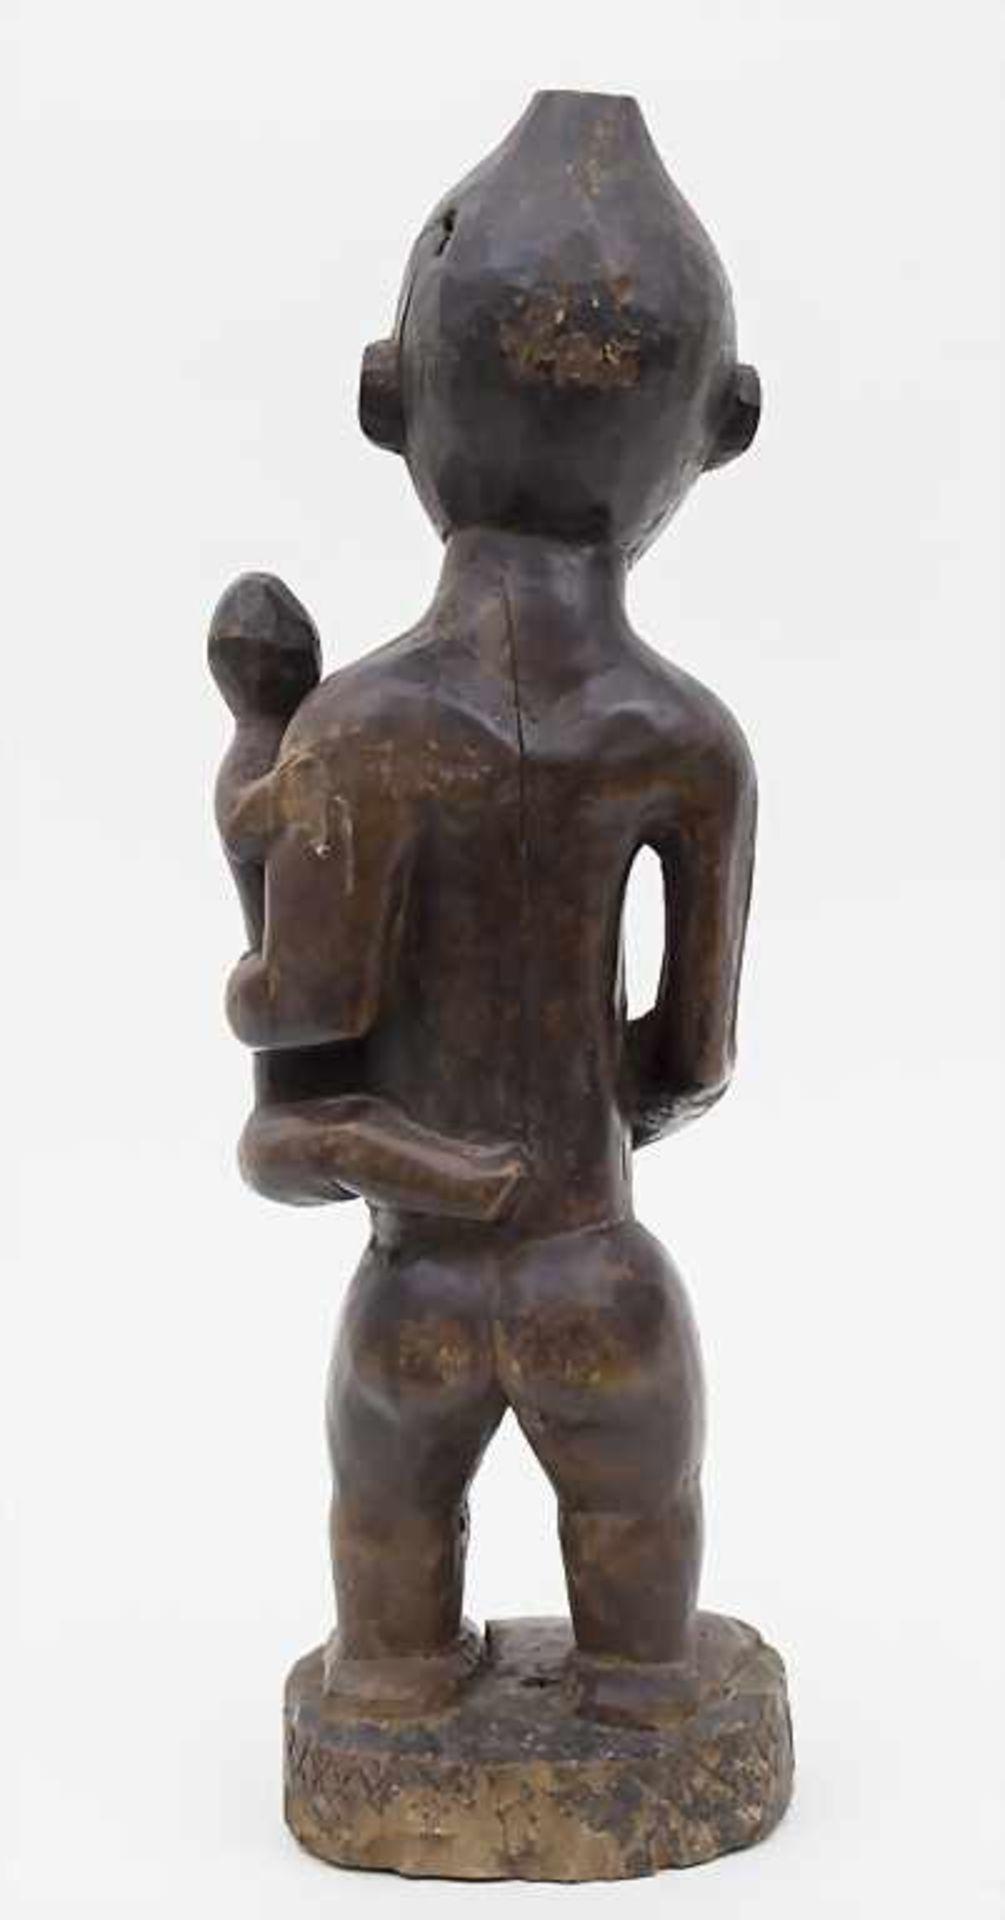 Mutterfigur / A Mother Figurine, Bakongo-Yombe, Kongo Material: Holz mit schöner Gebrauchspatina, - Bild 2 aus 5